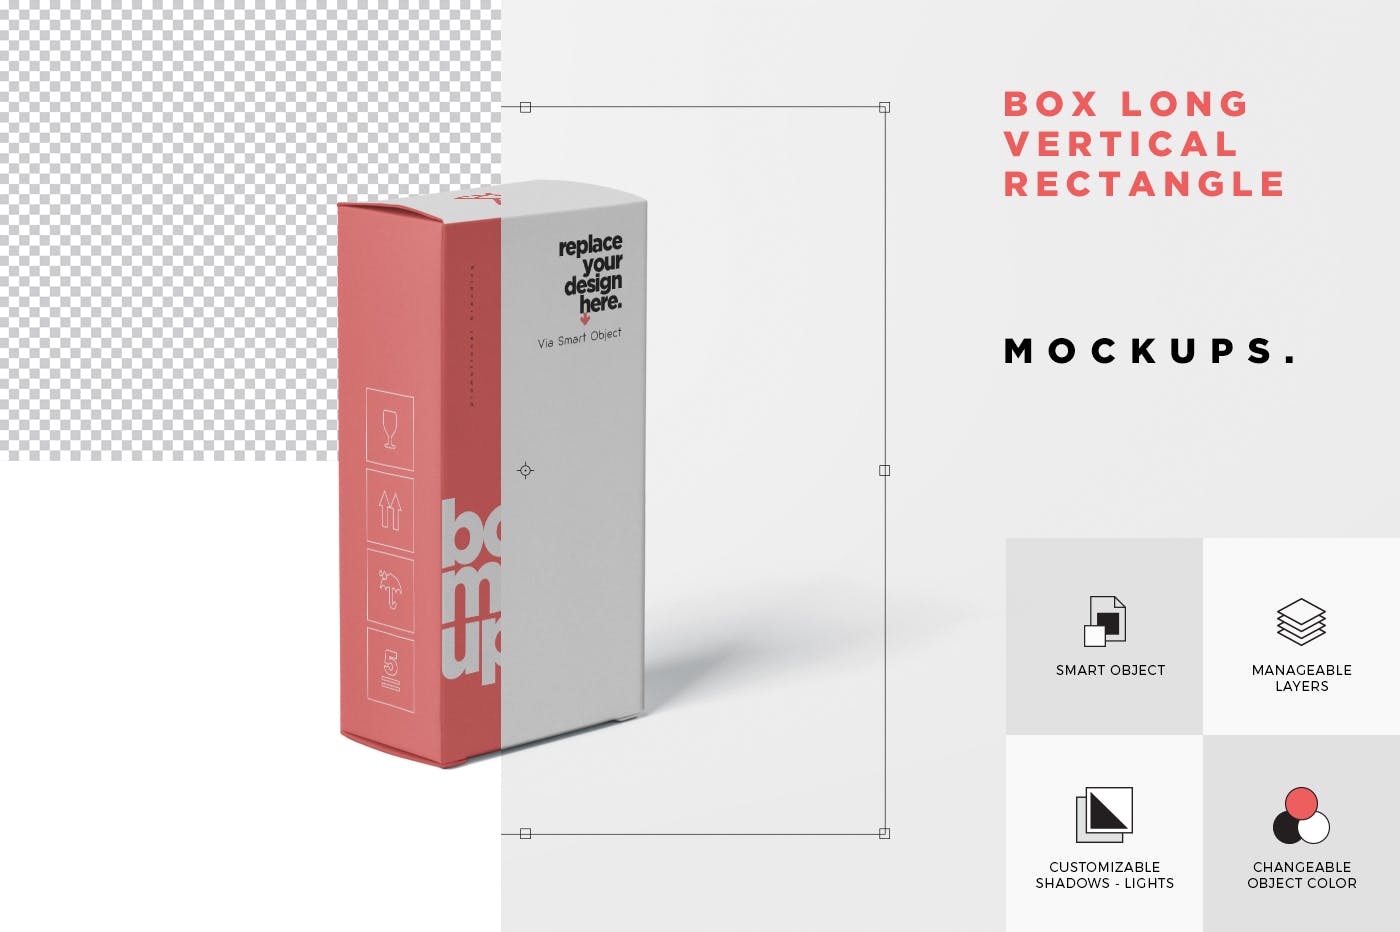 避孕套包装盒外观设计第一素材精选模板 Box Mockup  Long Vertical Rectangle插图(4)